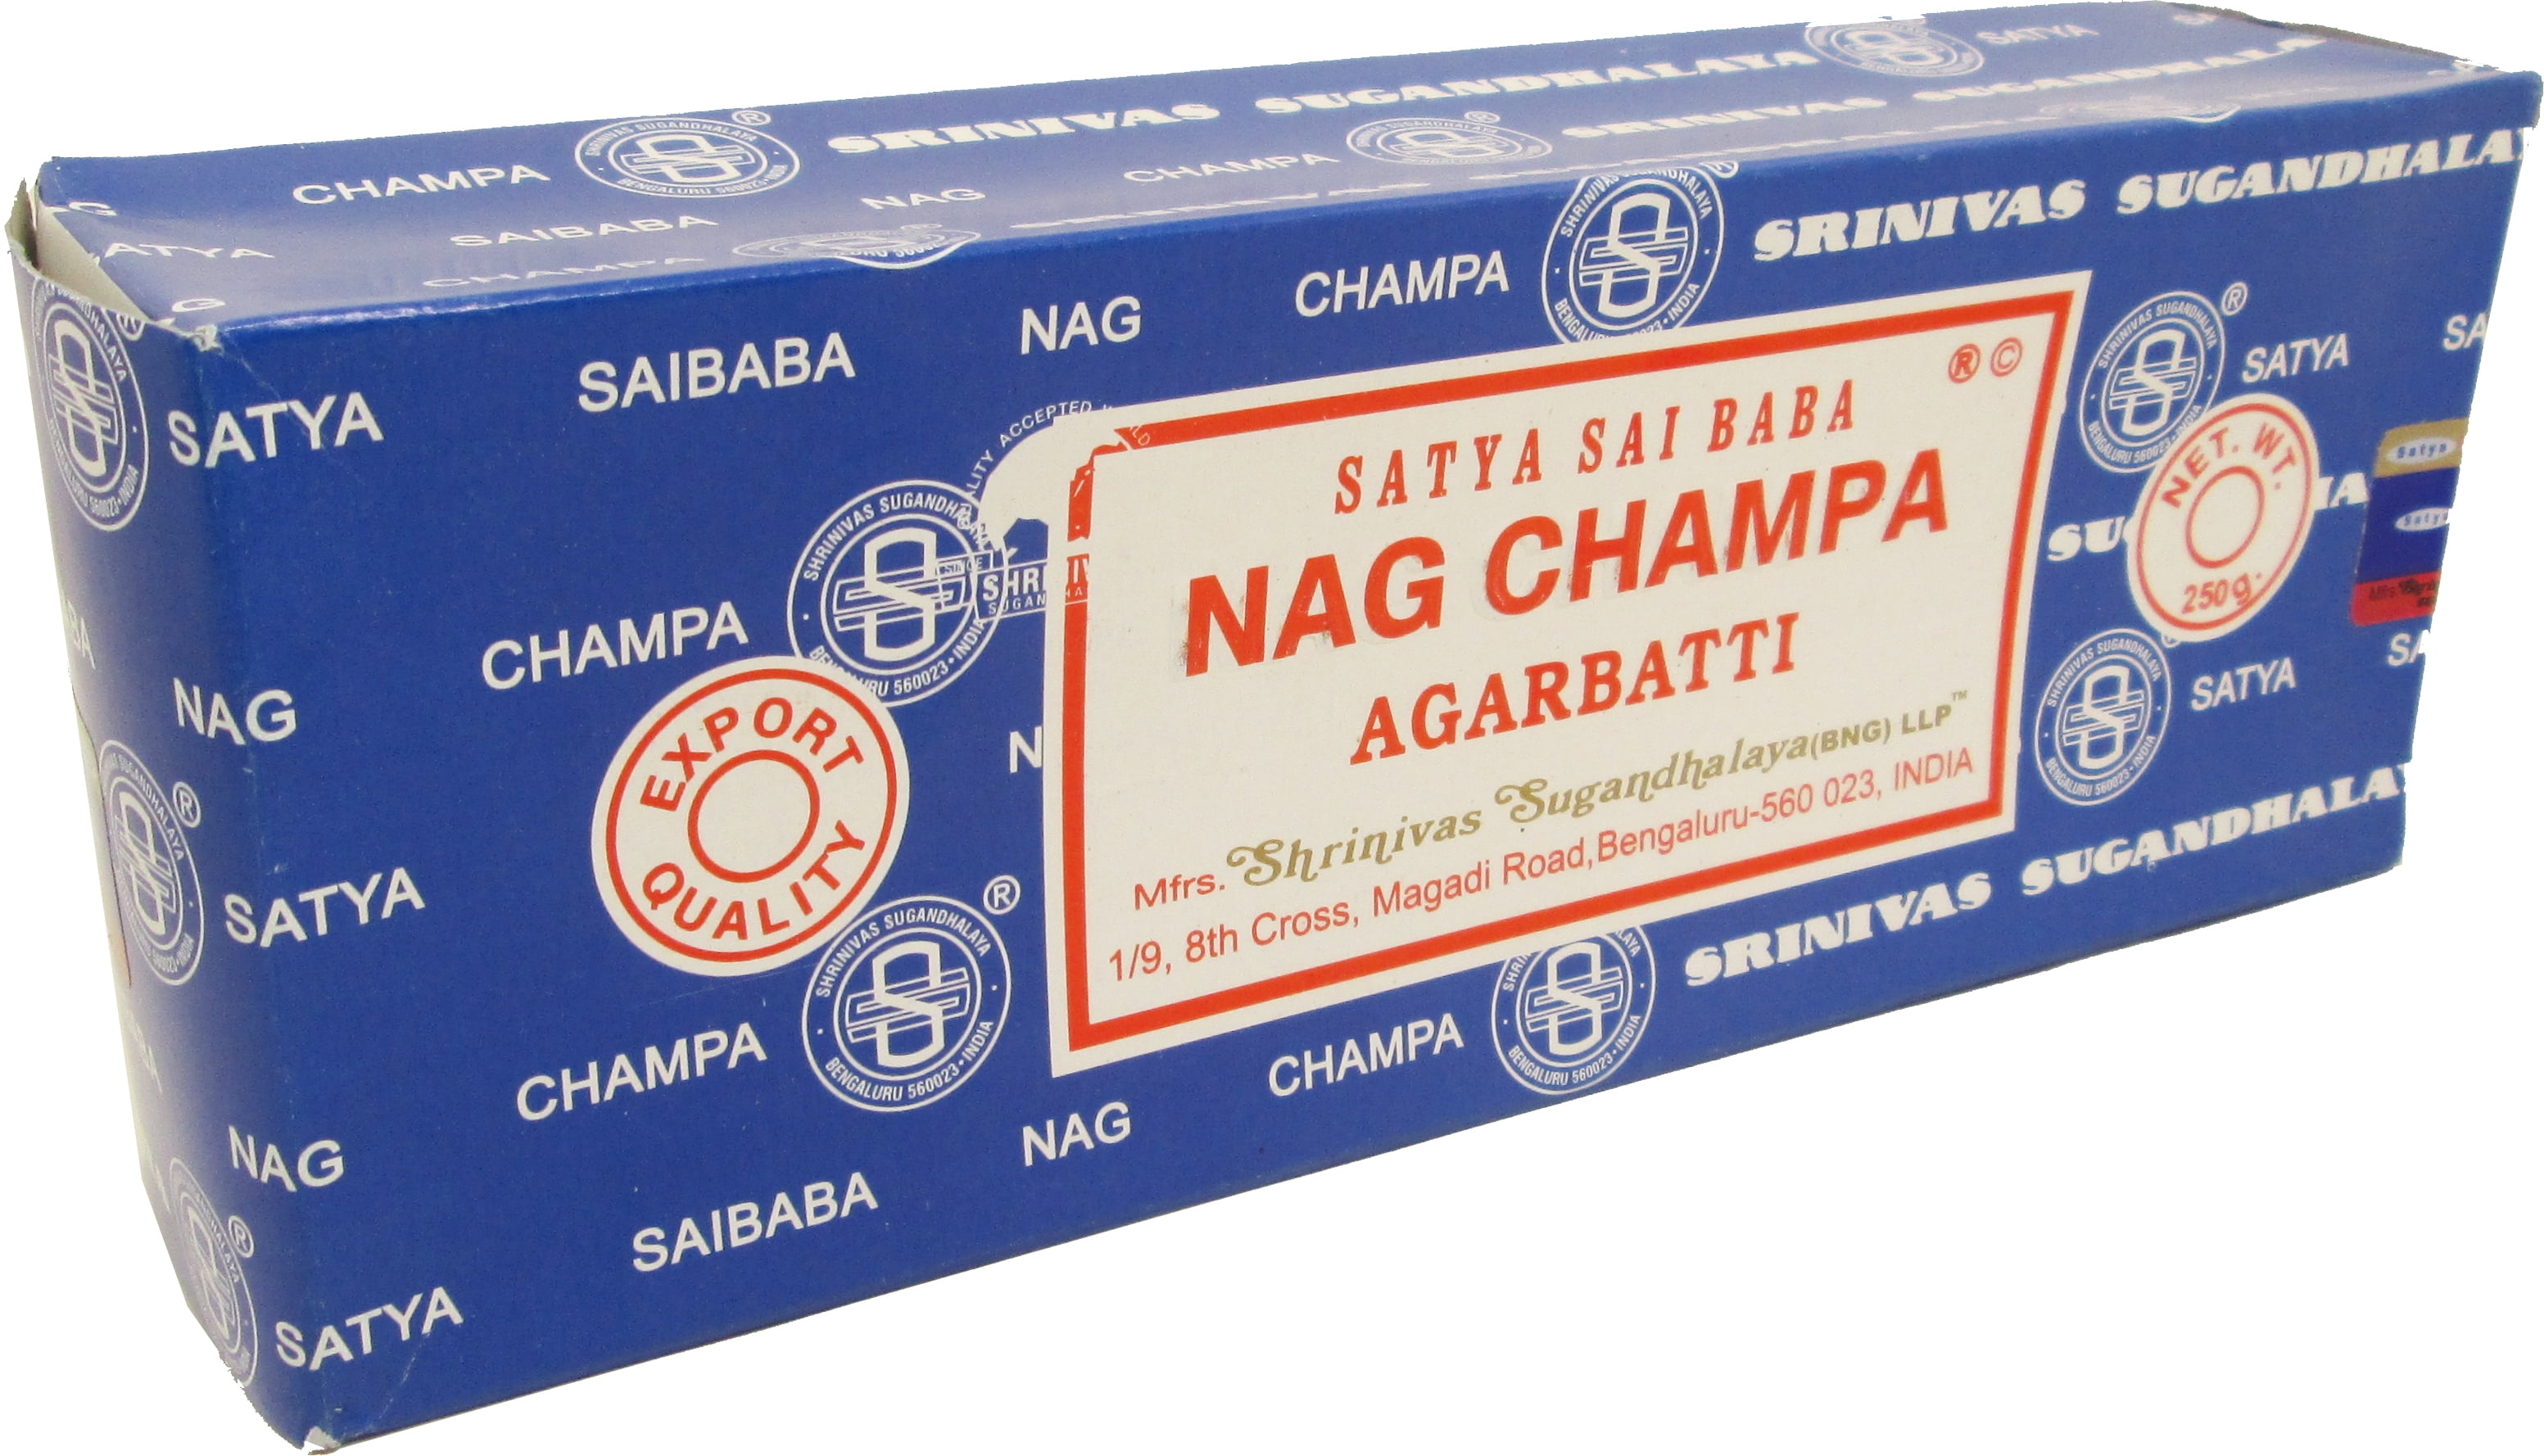 Satya-Genuine-SATYA-SAI-BABA-NAG-CHAMPA-VARIETY-MIX-12-X-15G-BOXES-OF-INCENSE 